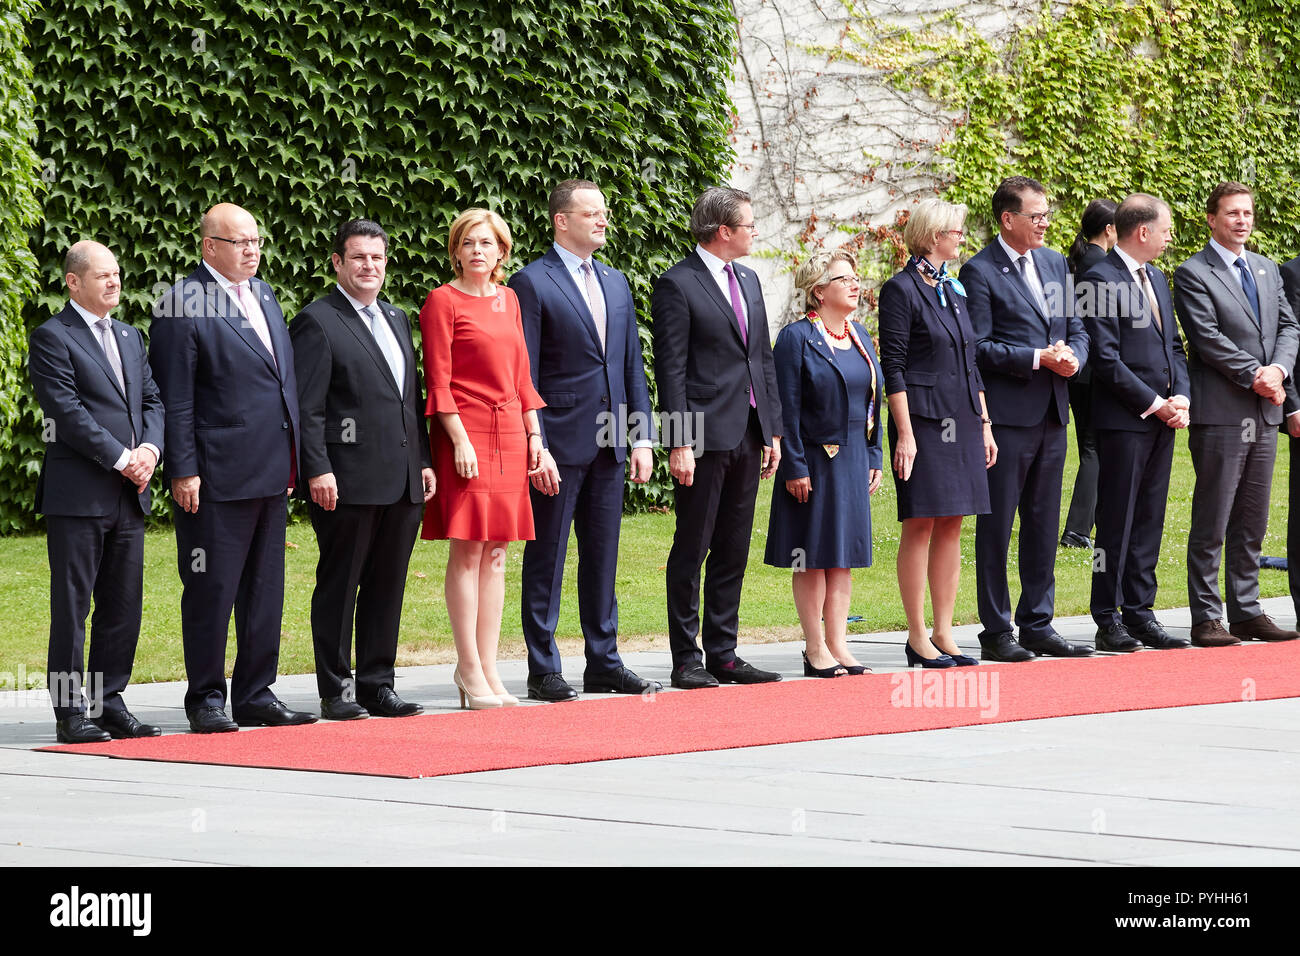 Berlin, Allemagne - Le cabinet fédéral est debout sur le tapis rouge lors de la visite d'état du Premier ministre chinois dans la cour de la Chancellerie fédérale d'honneur. Banque D'Images